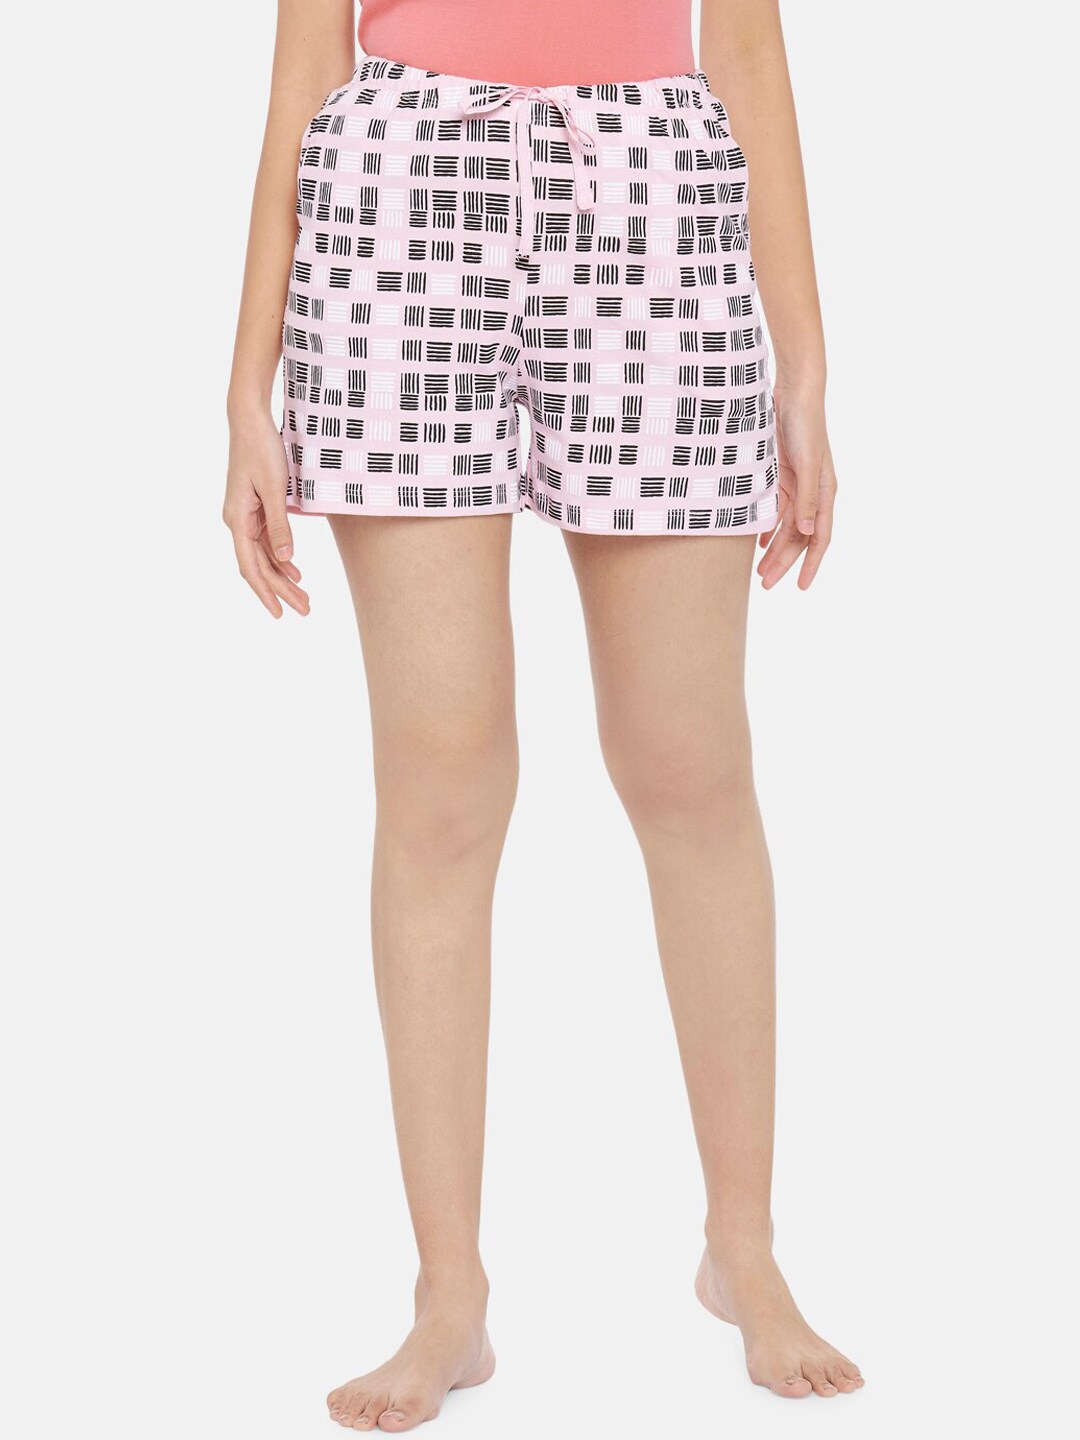 Dreamz by Pantaloons Women Pink Printed Regular Lounge Shorts Price in India